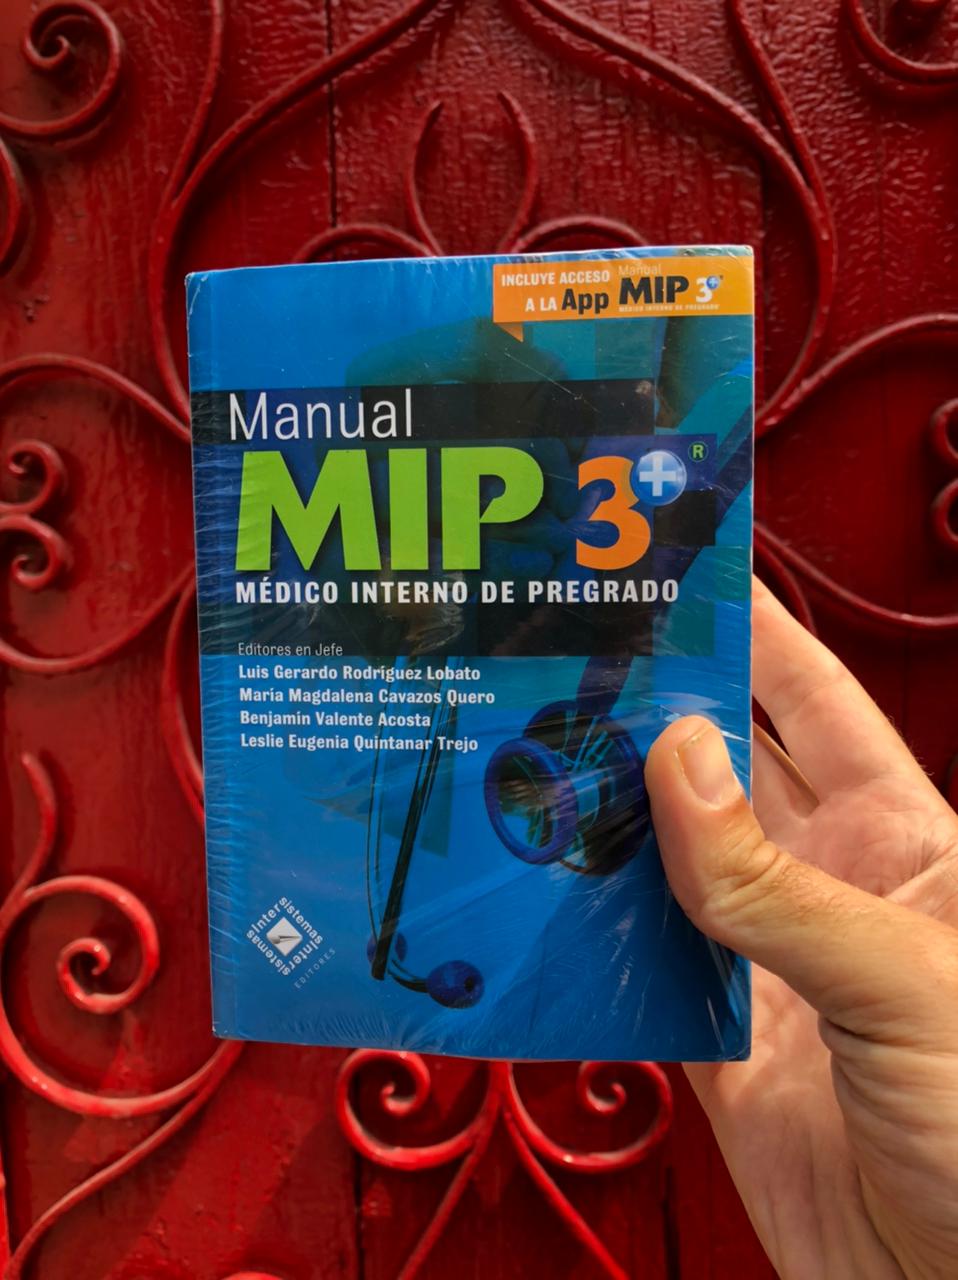 Manual MIP 3 Médico Interno de Pregrado